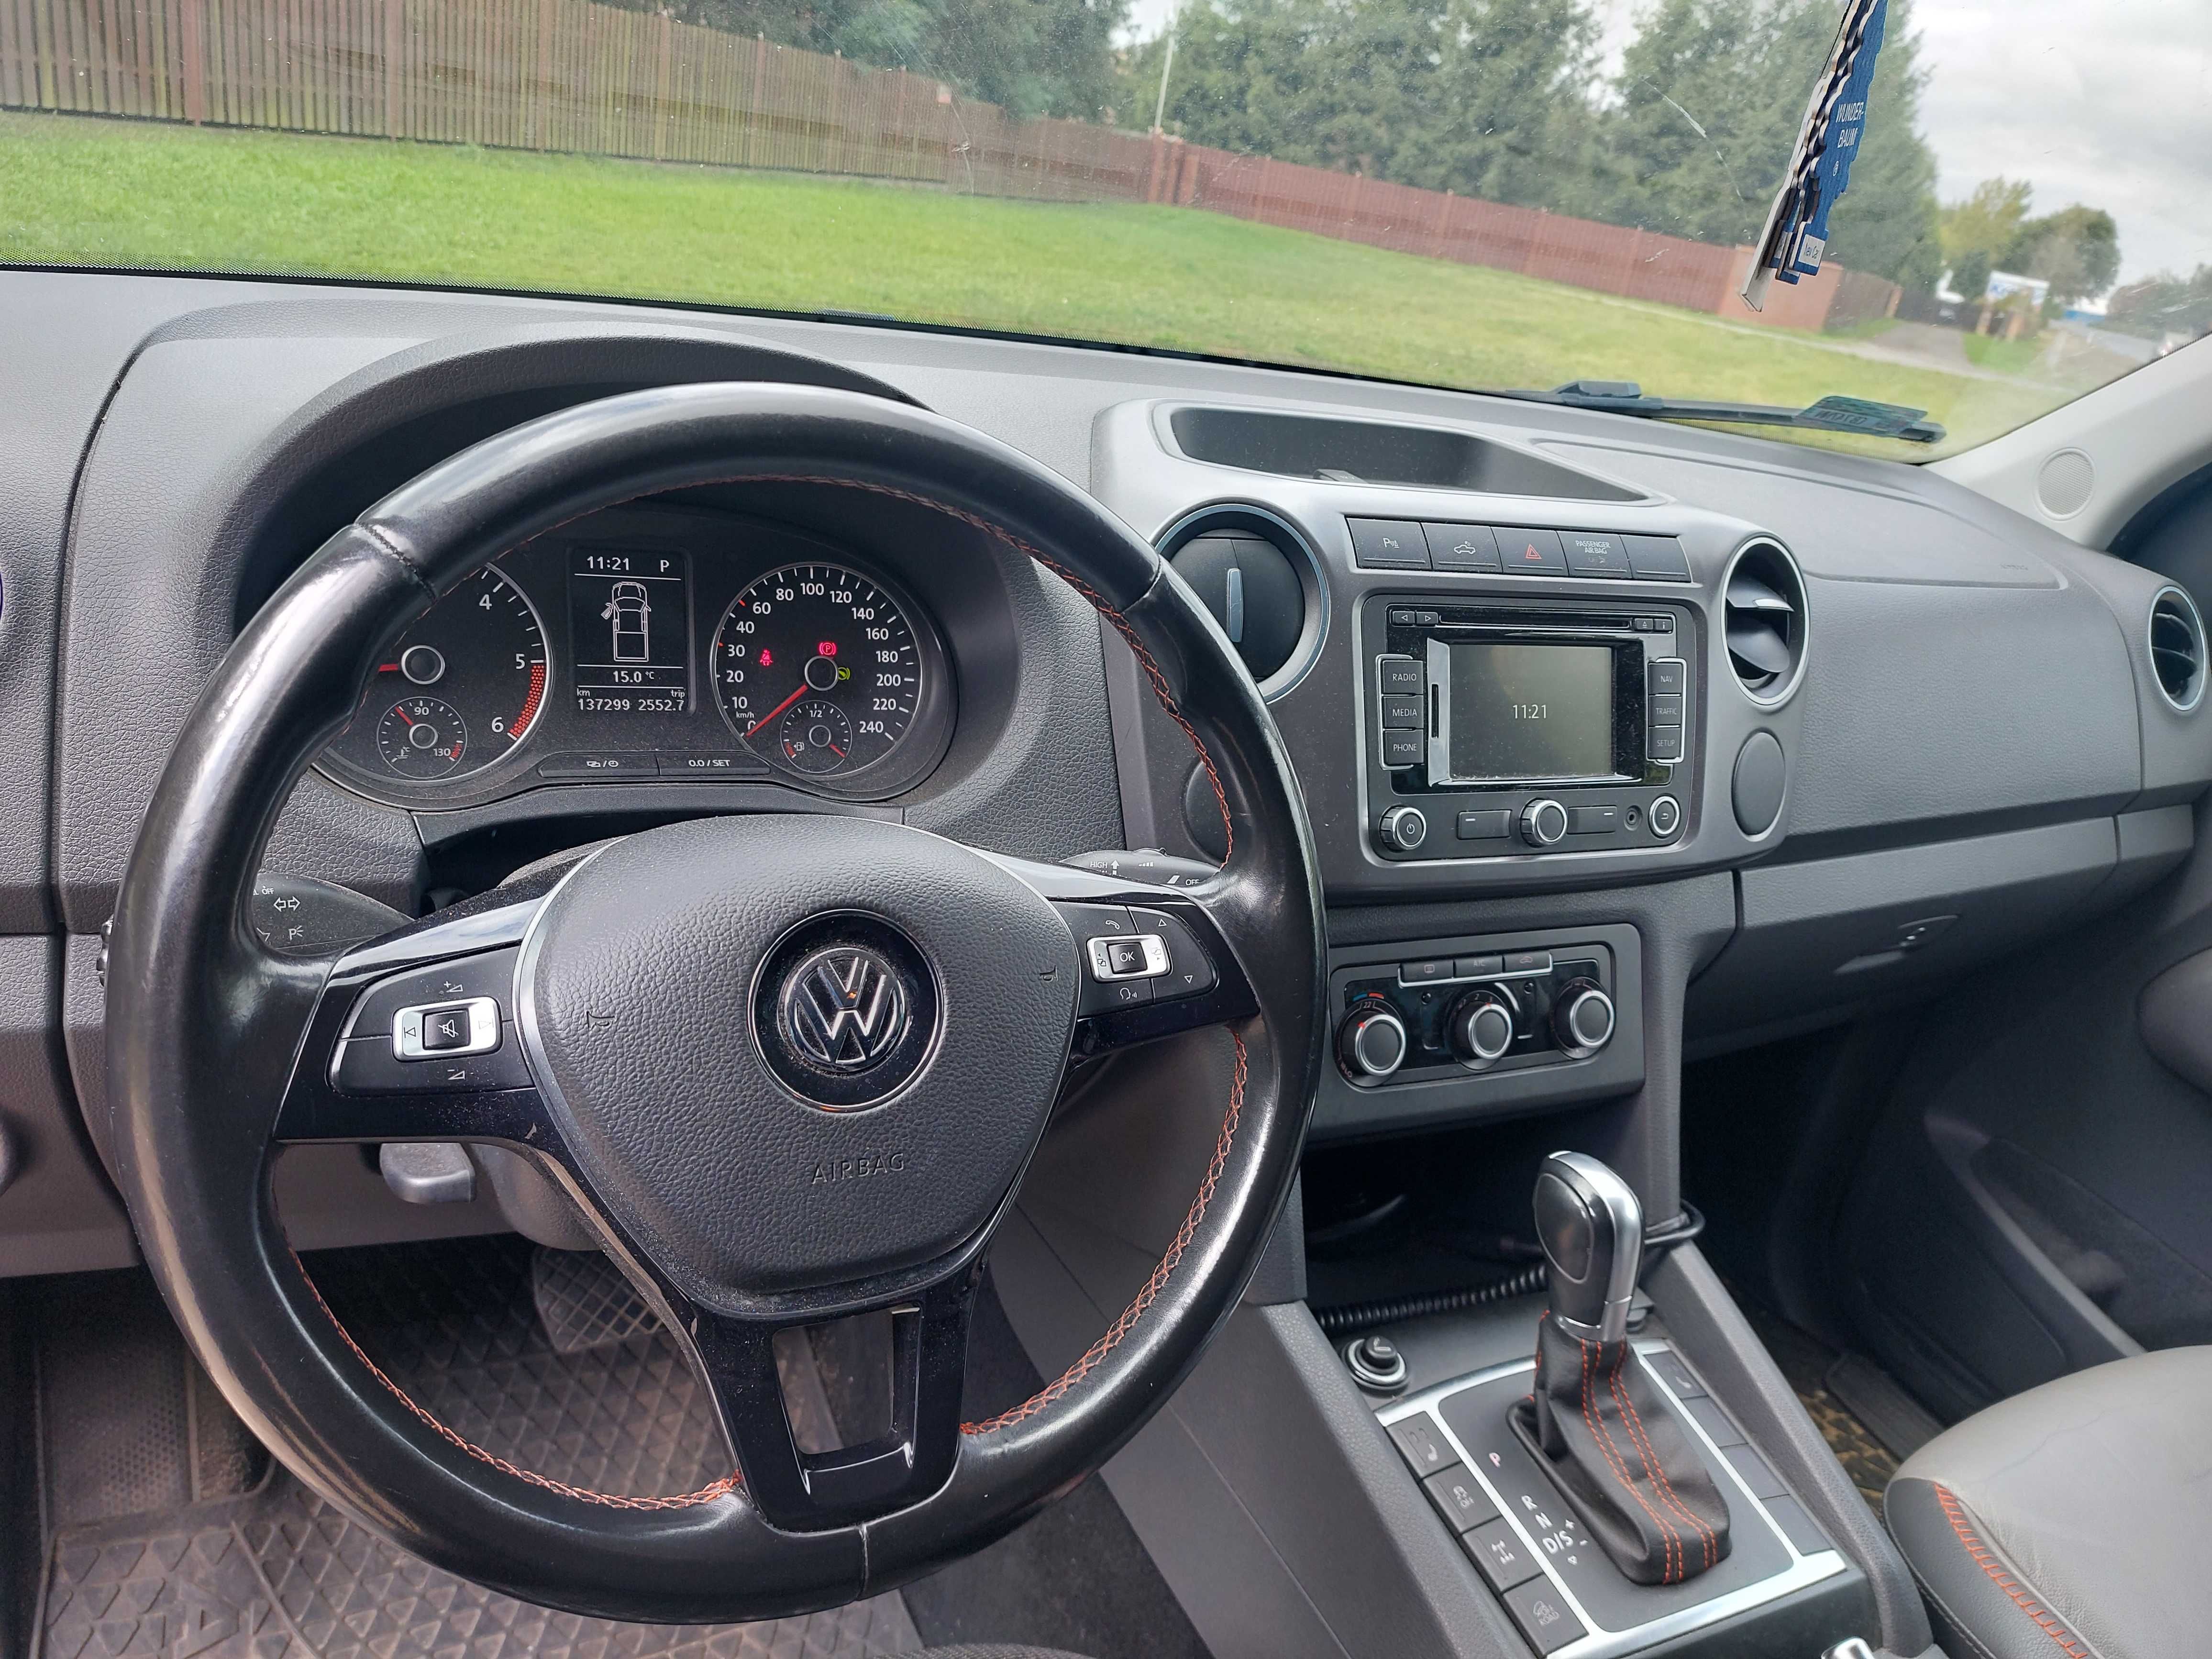 VW Amarok biTurbo 2.0 diesel 132kw